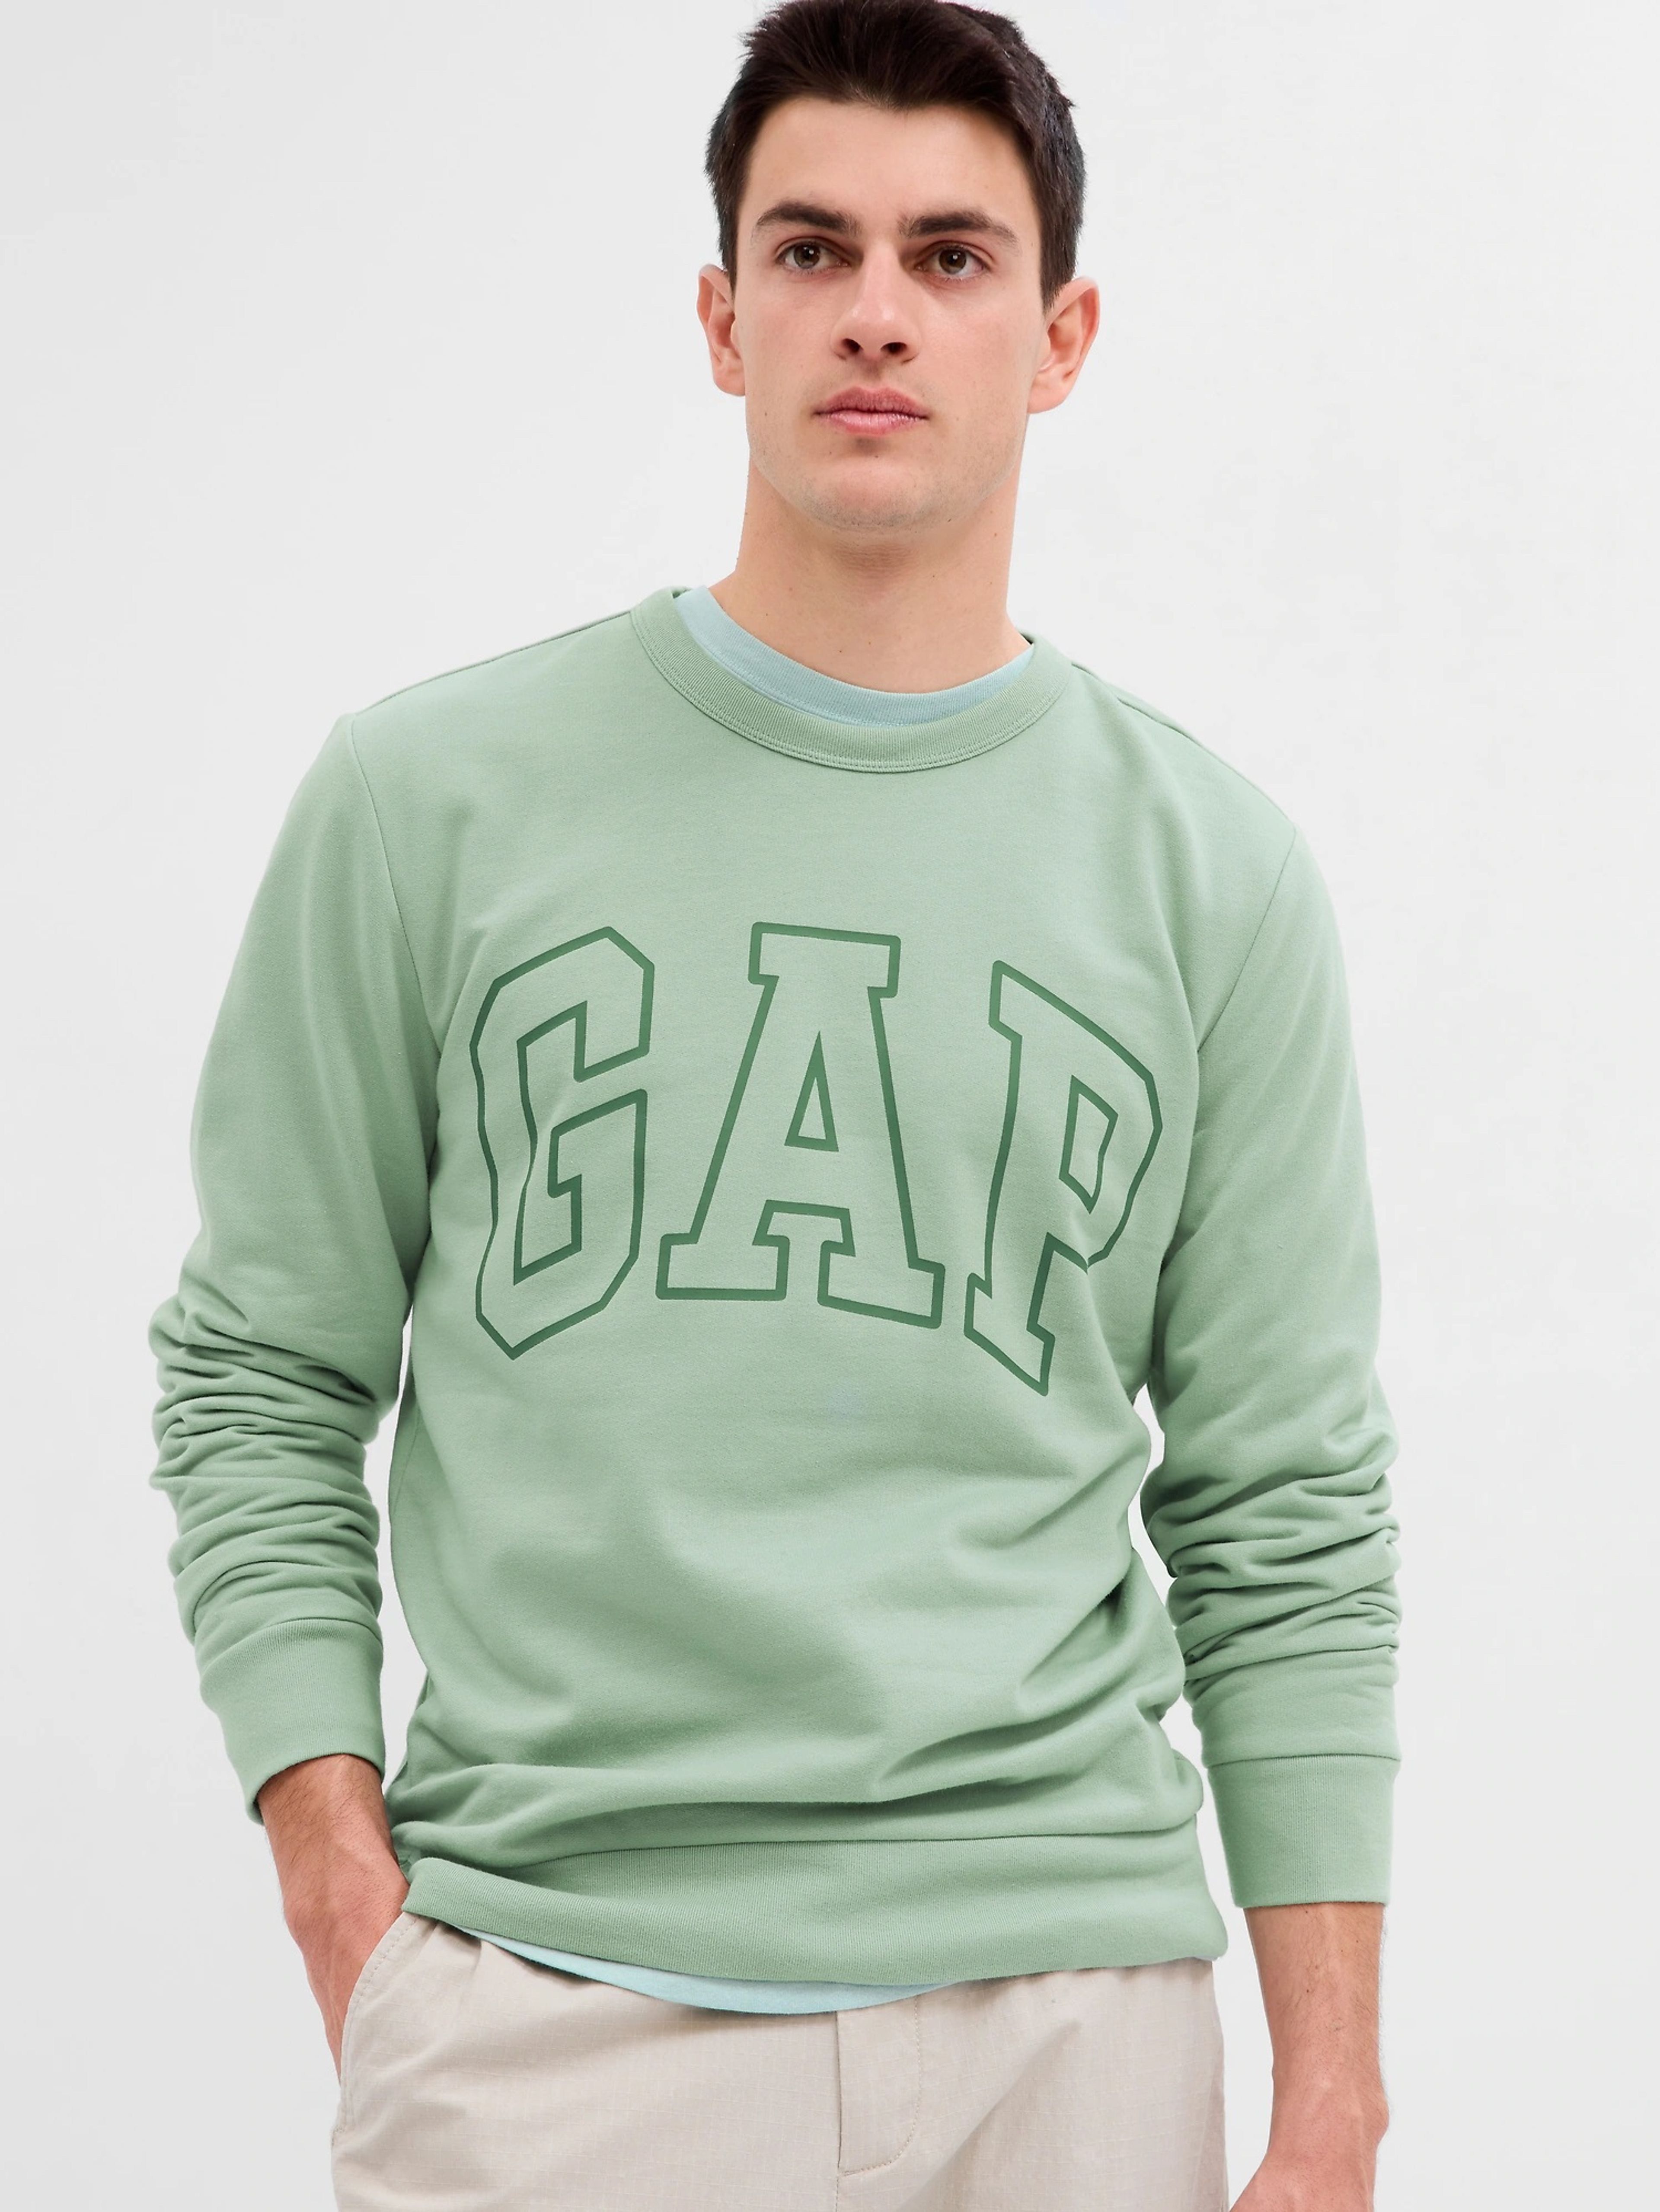 Sweatshirt mit GAP Logo